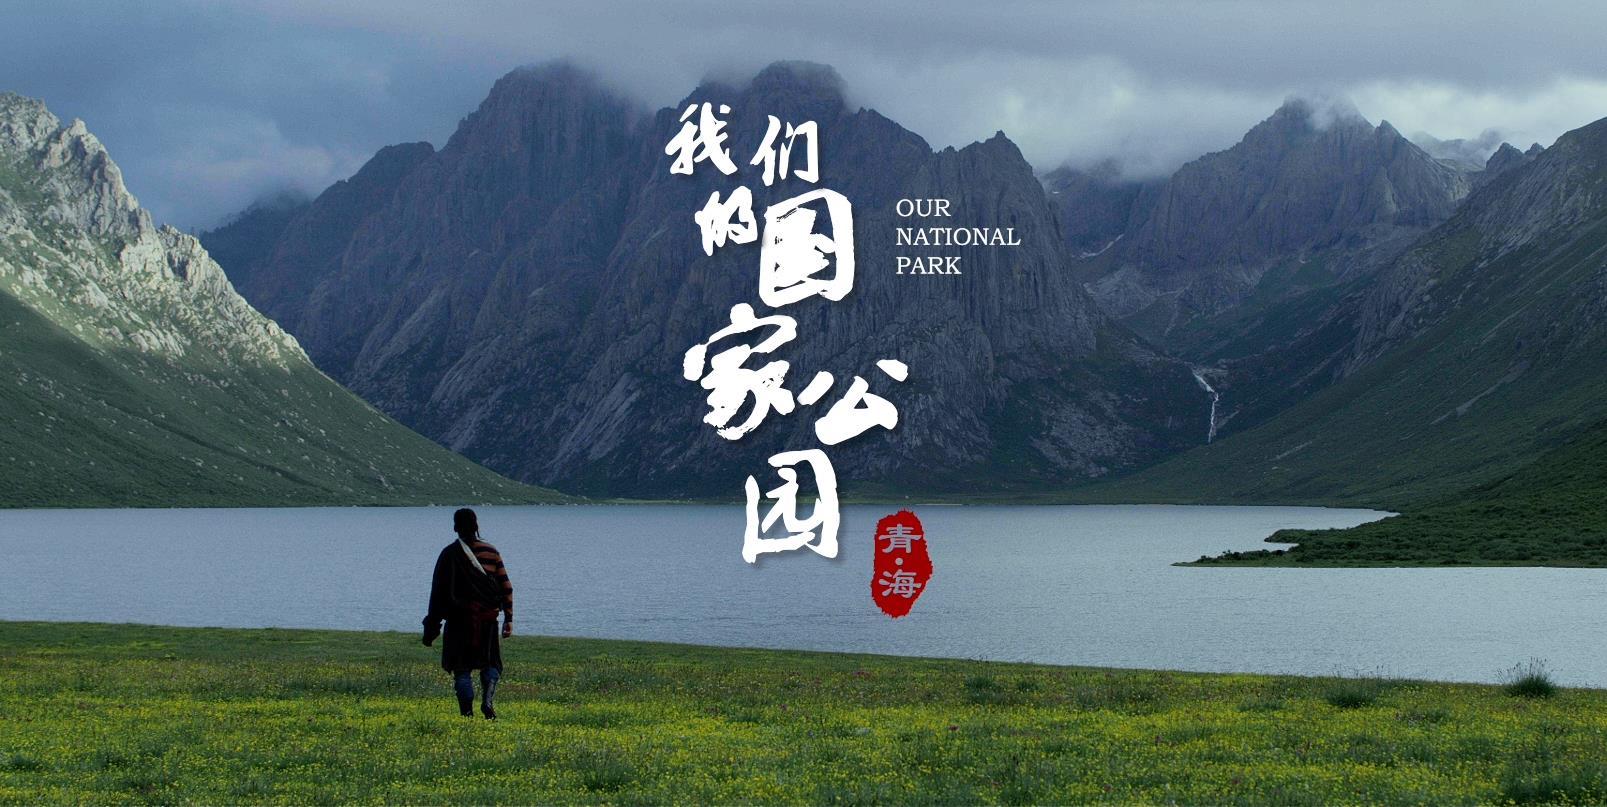 《青海·我们的国家公园》第一集 草海 宣传片